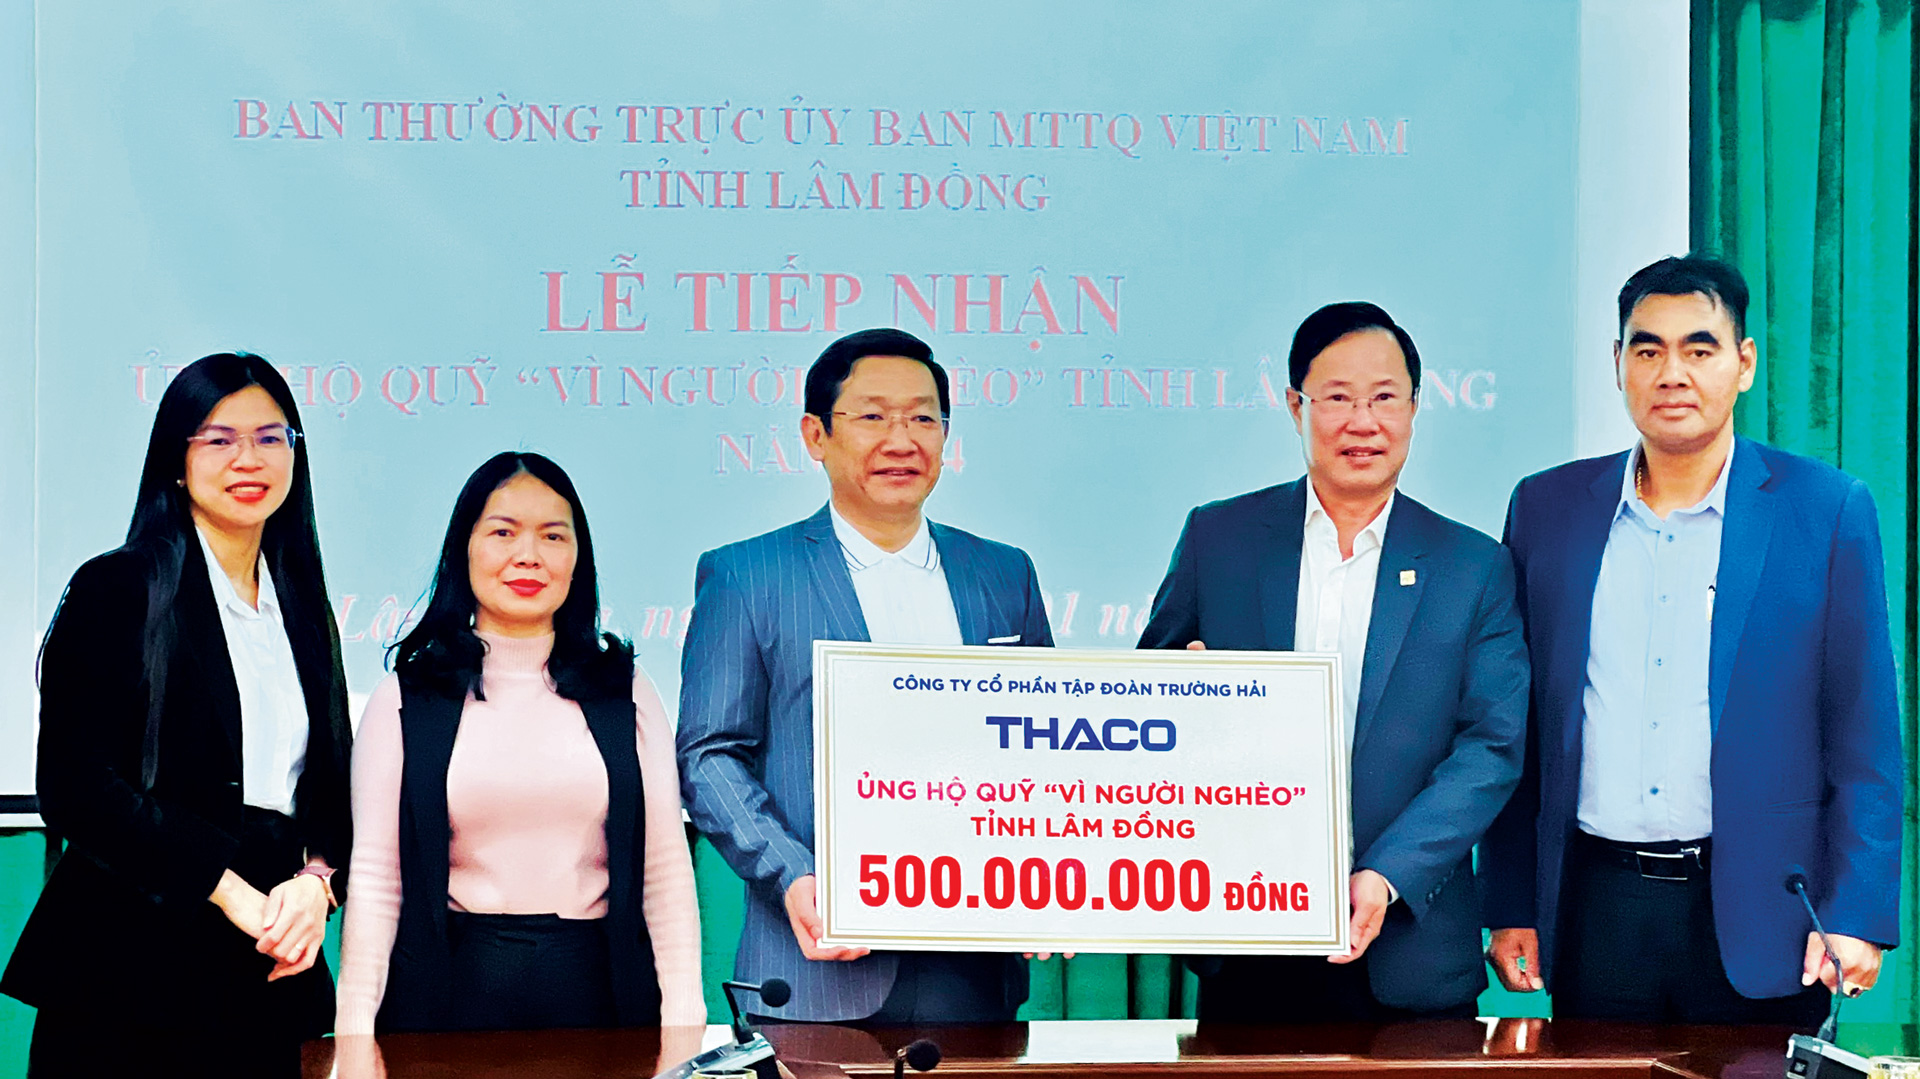 Công ty Cổ phần Tập đoàn Trường Hải ThaCo ủng hộ “Quỹ vì người nghèo Lâm Đồng” 500 triệu đồng để chung tay giúp hộ nghèo, hộ khó khăn có thêm mái ấm